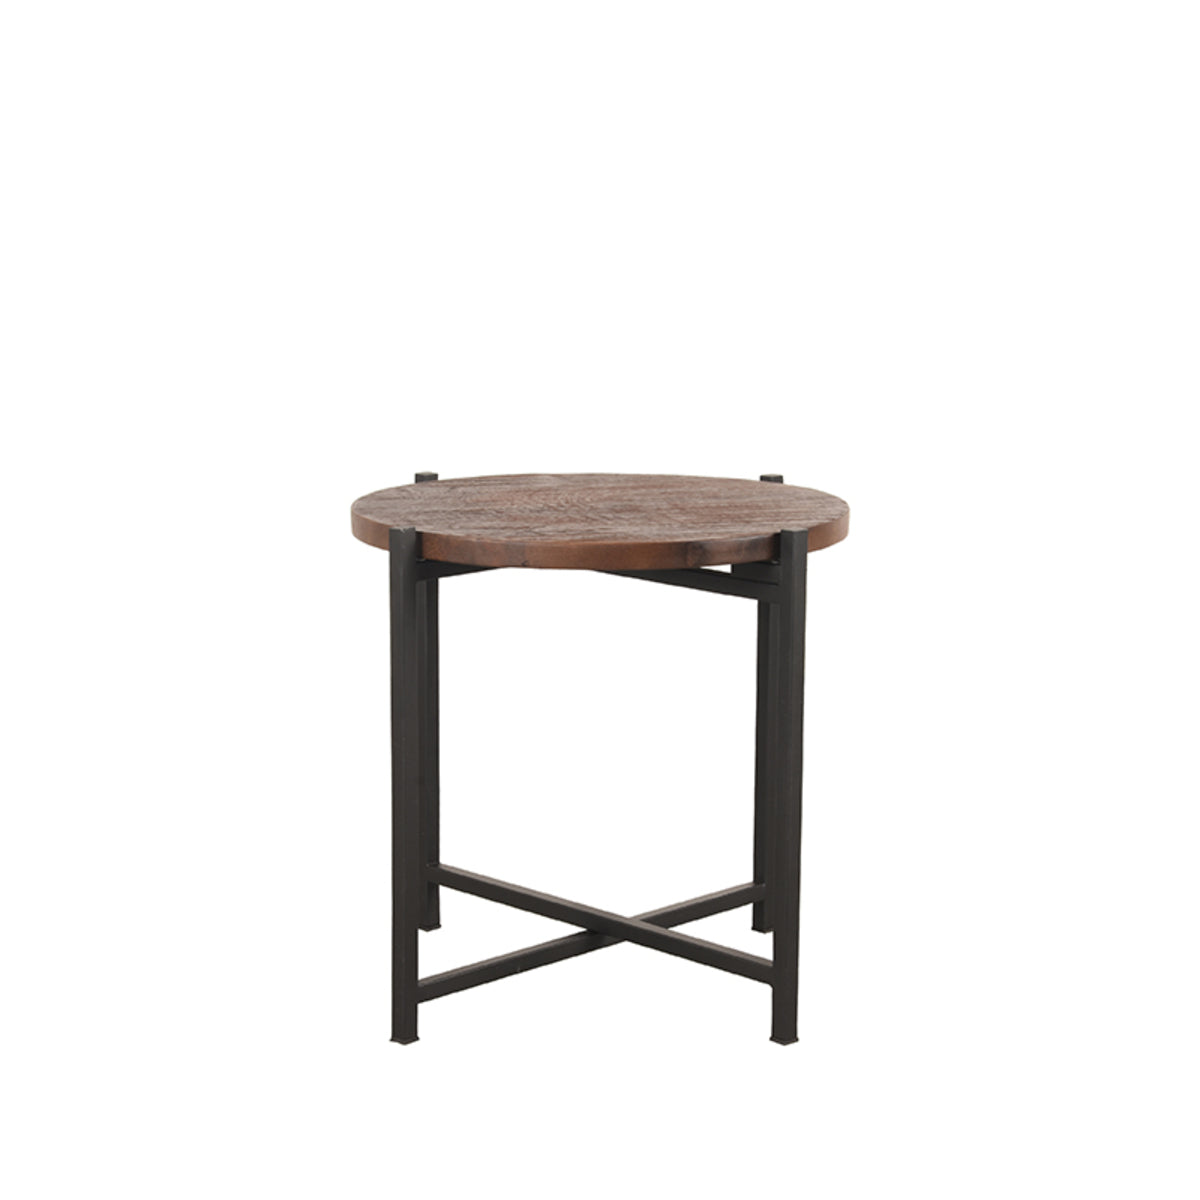 LABEL51 Side table Dox - Espresso - Mango wood - Black